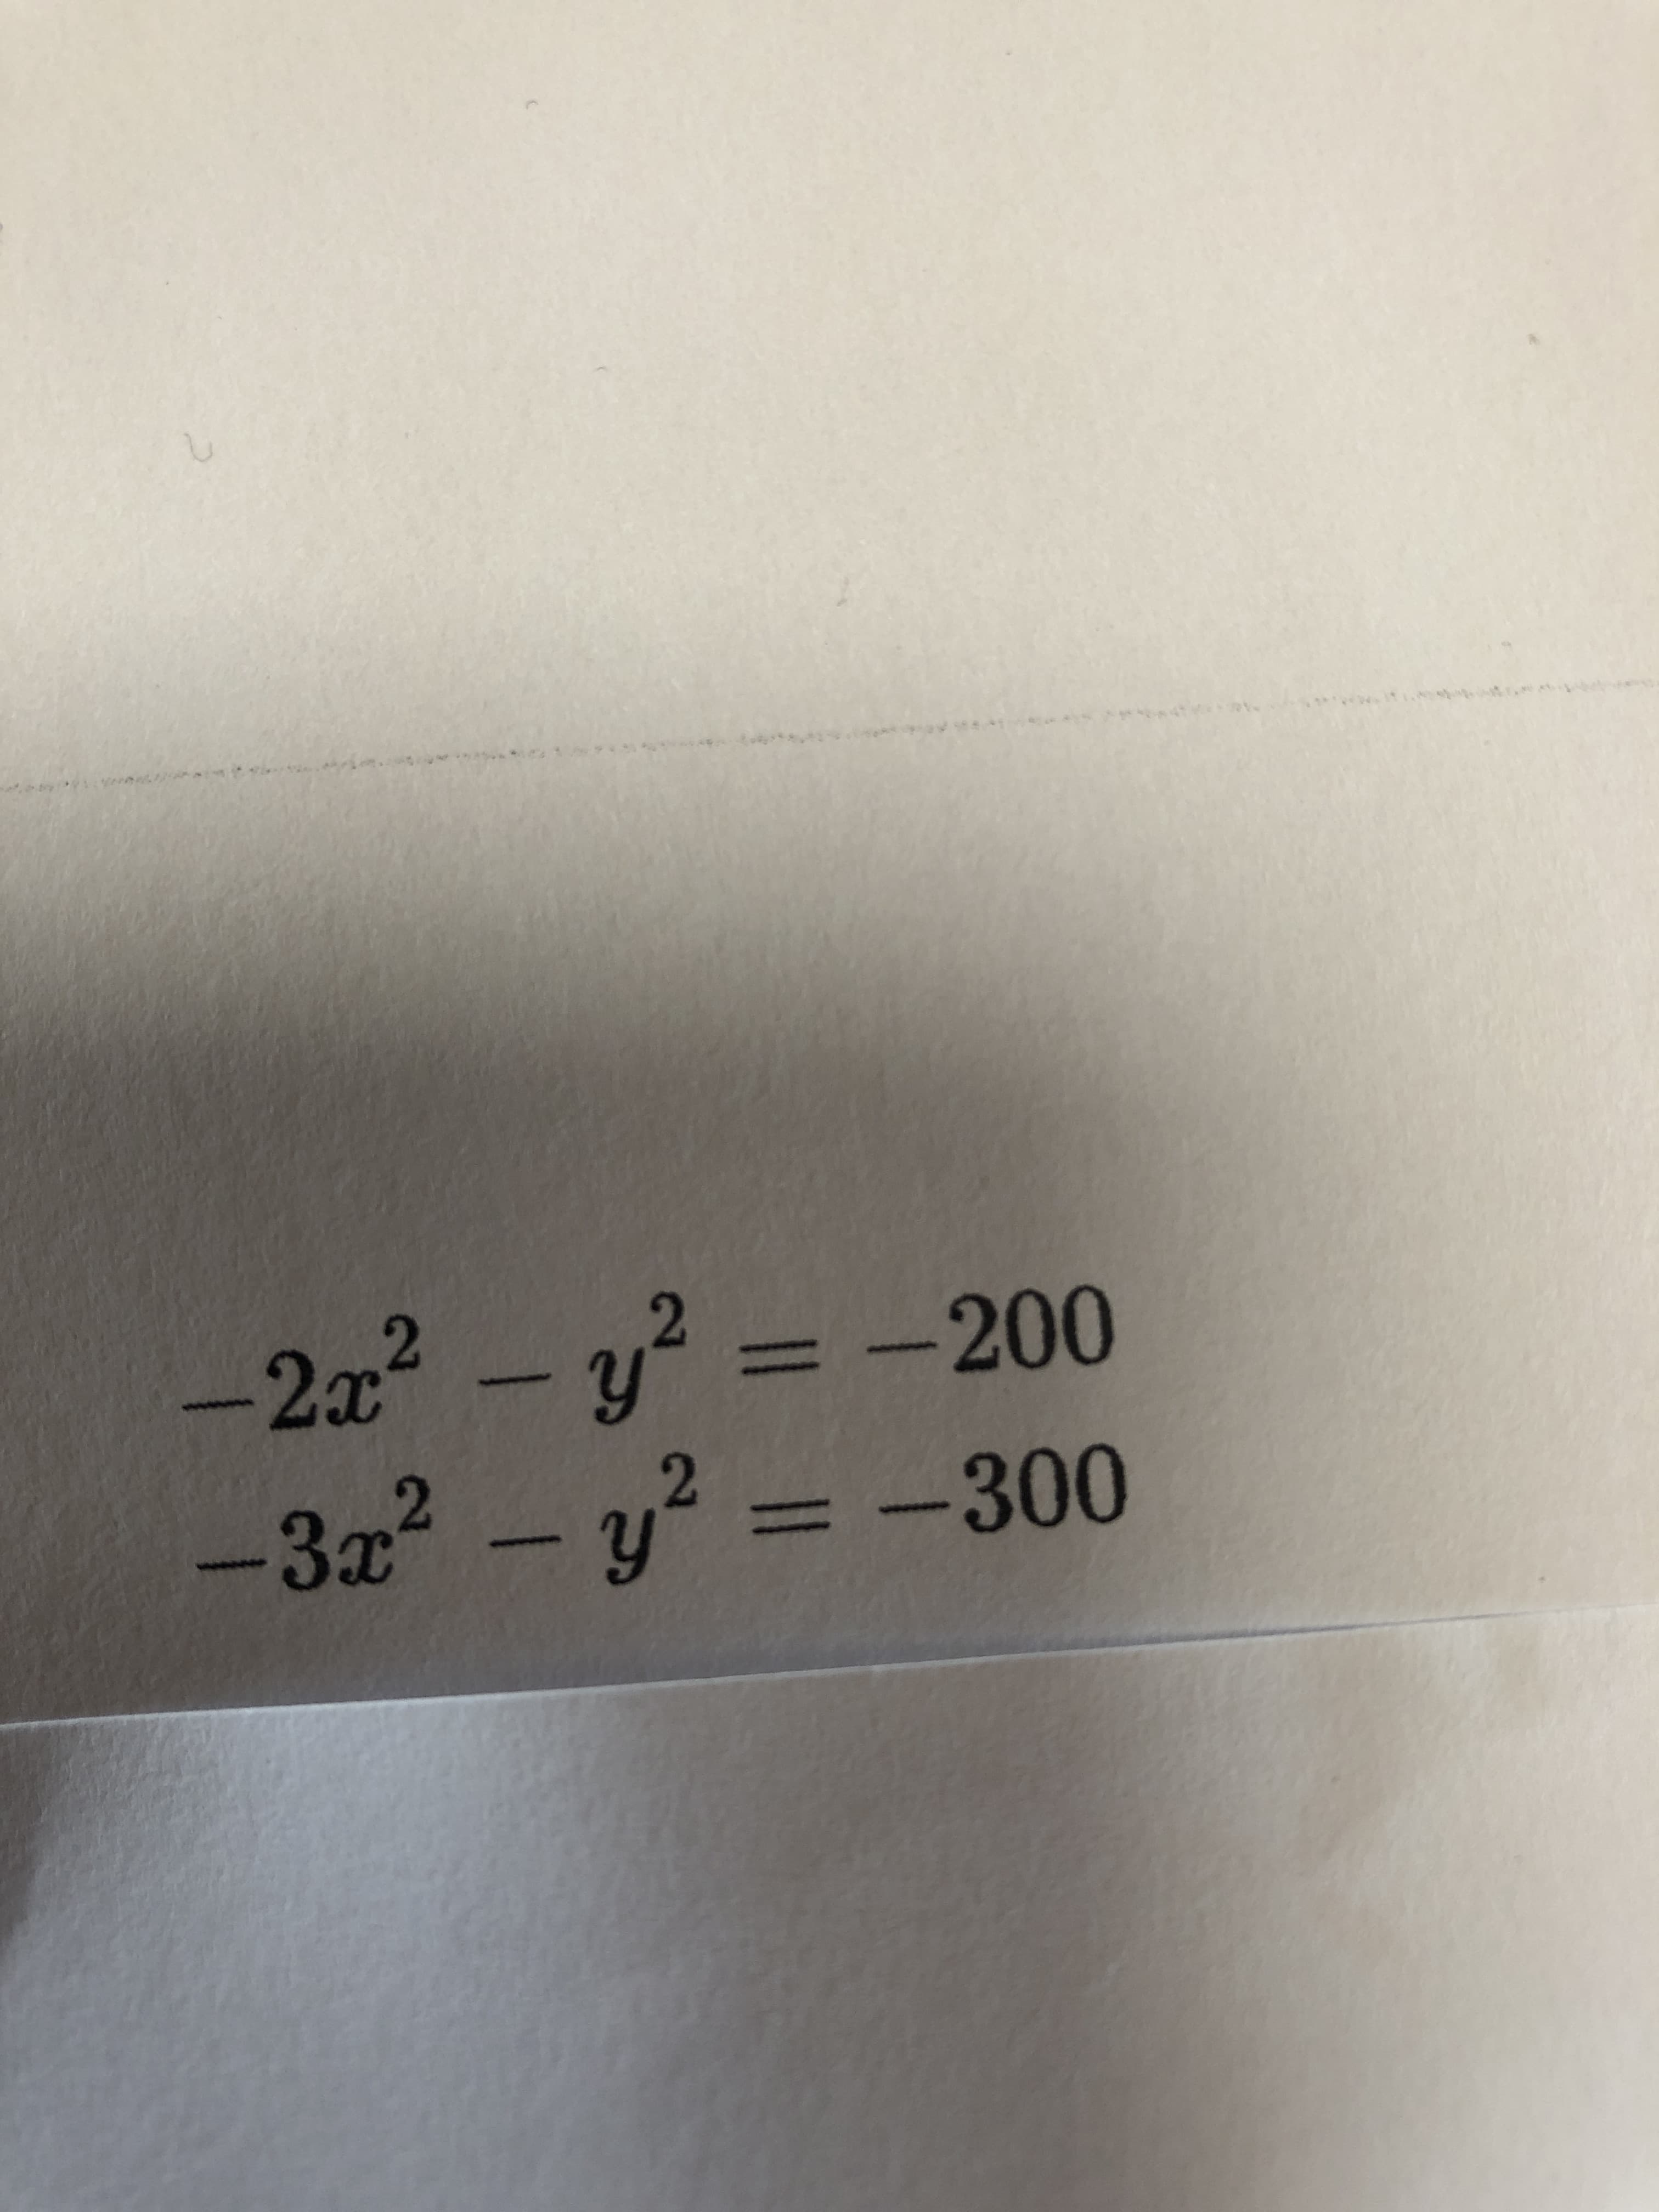 2x2 - y? = -200
-3x2 - y? = -300
%3D
